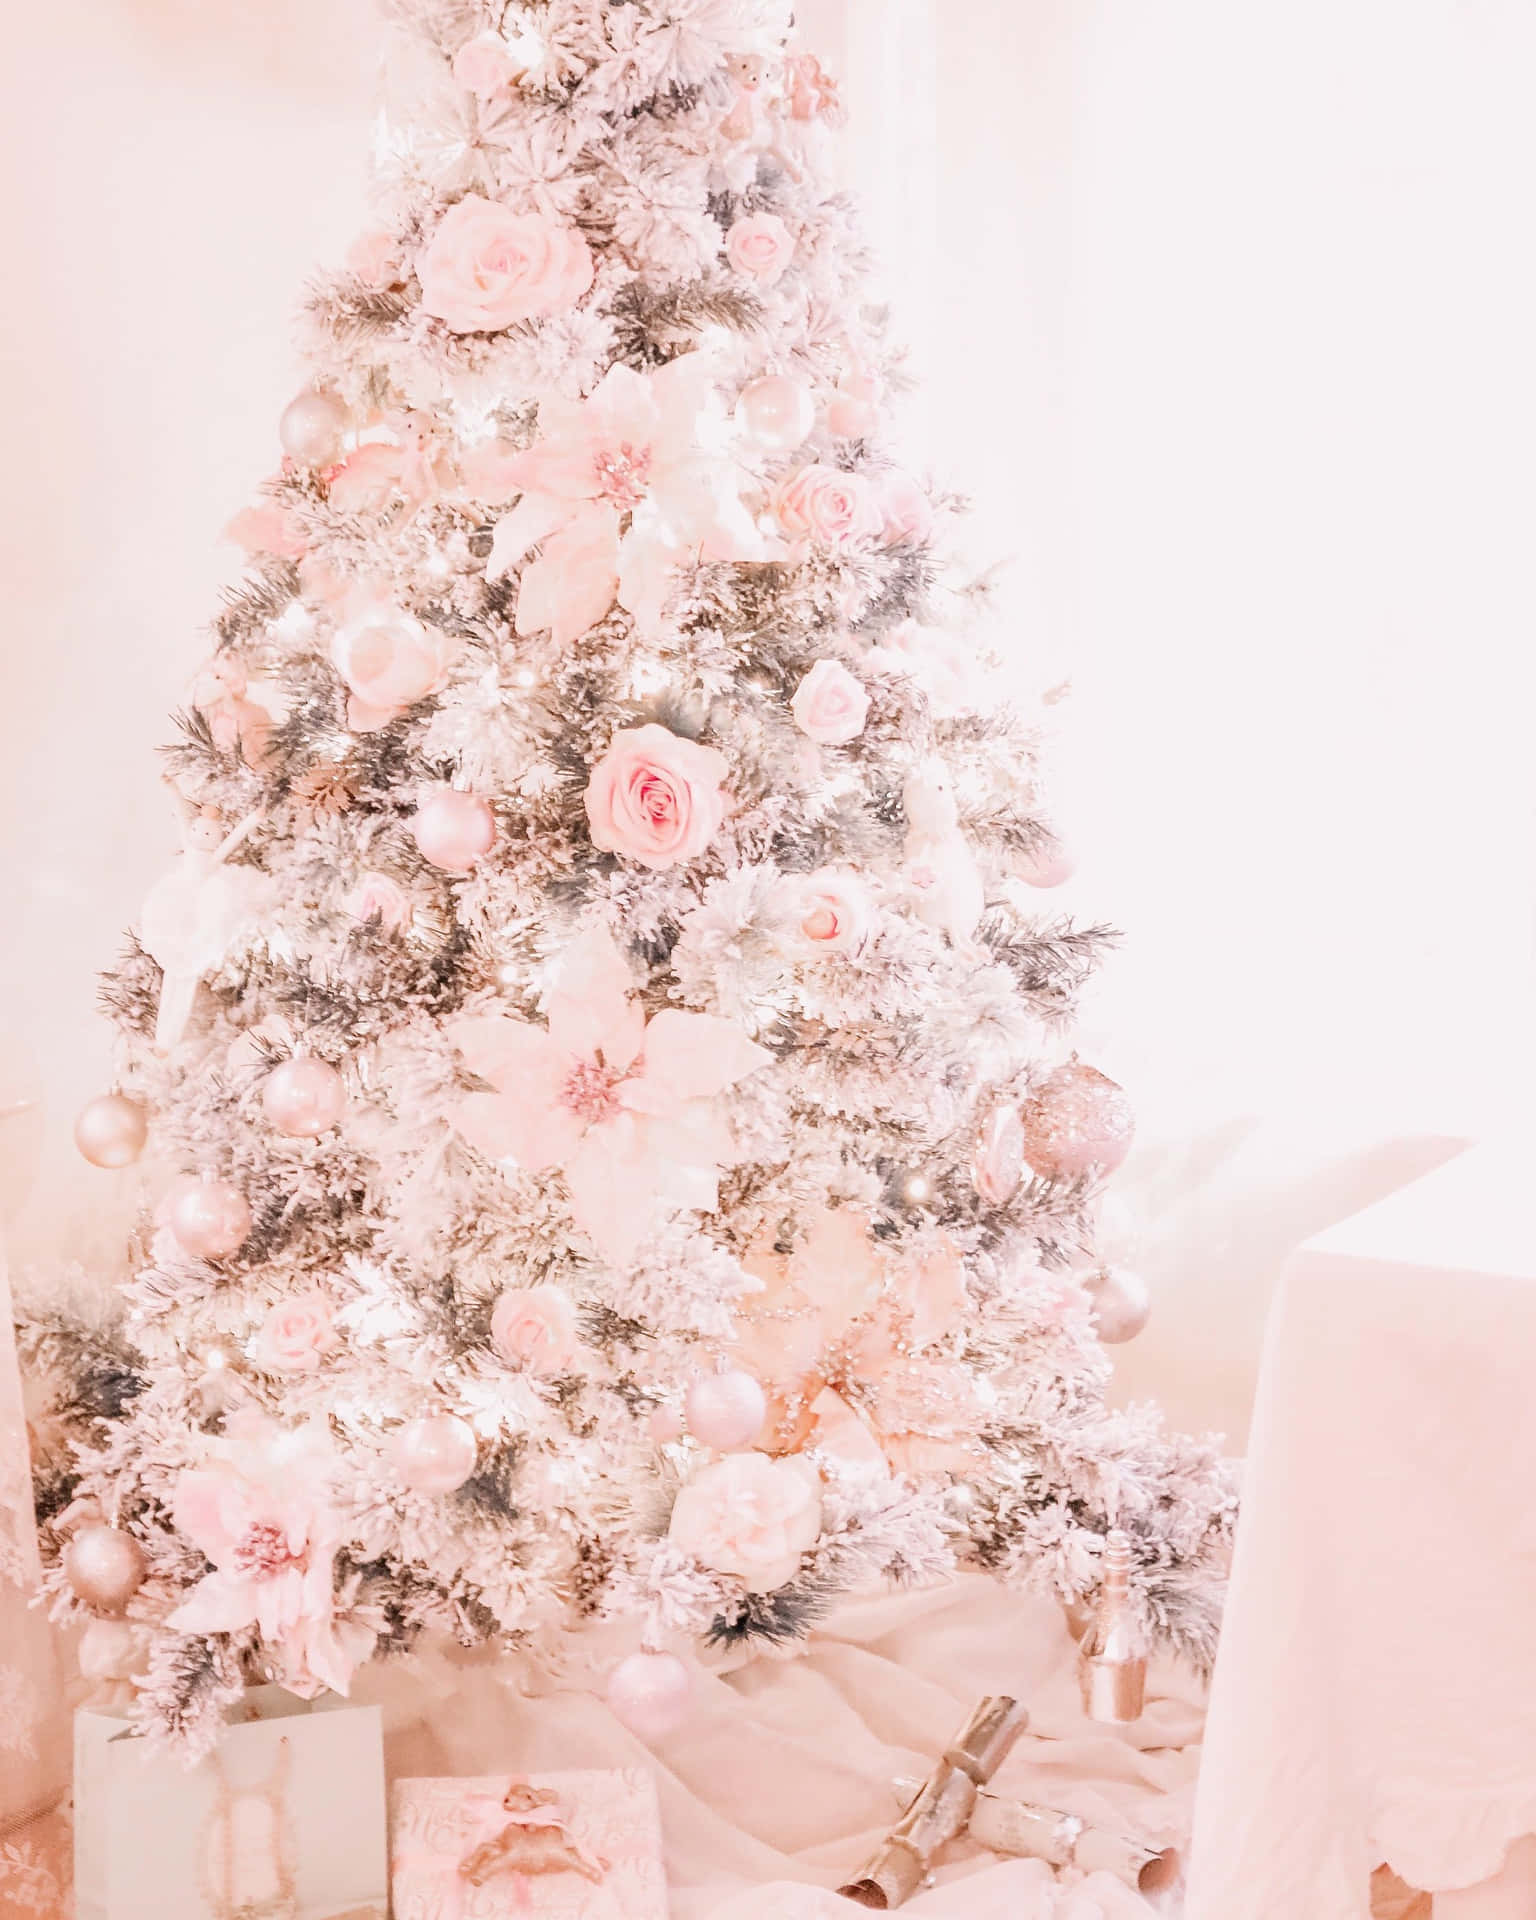 Lyst op på din jule tid med denne søde pink juletræ tapet! Wallpaper